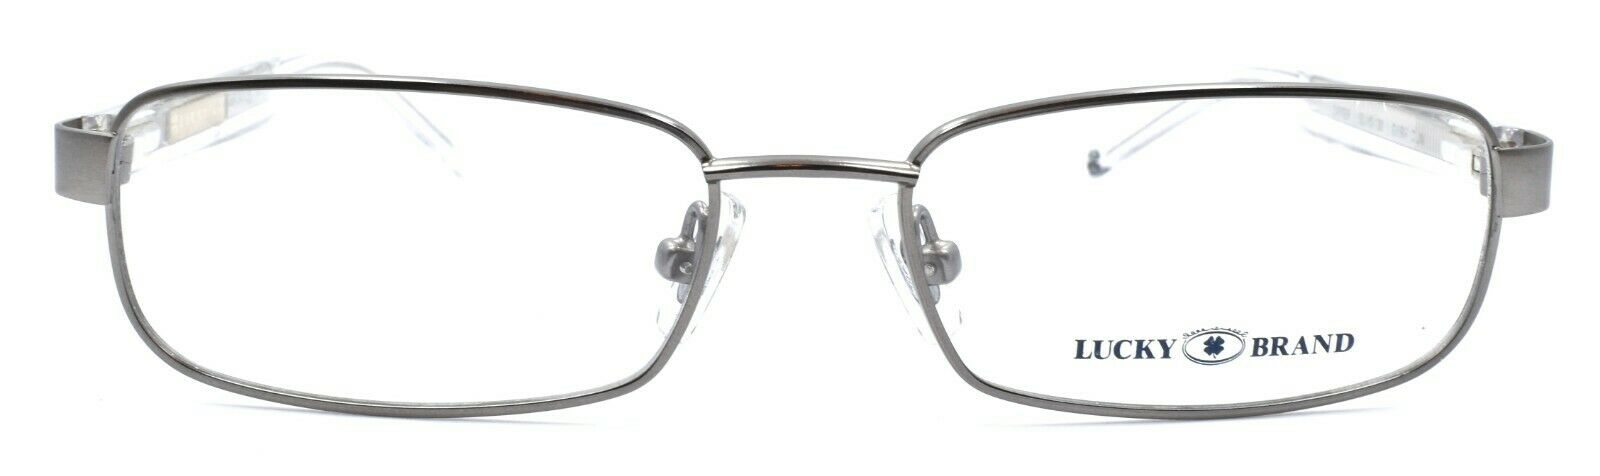 2-LUCKY BRAND Zipper Eyeglasses Frames SMALL 50-15-130 Dark Gun + CASE-751286226966-IKSpecs